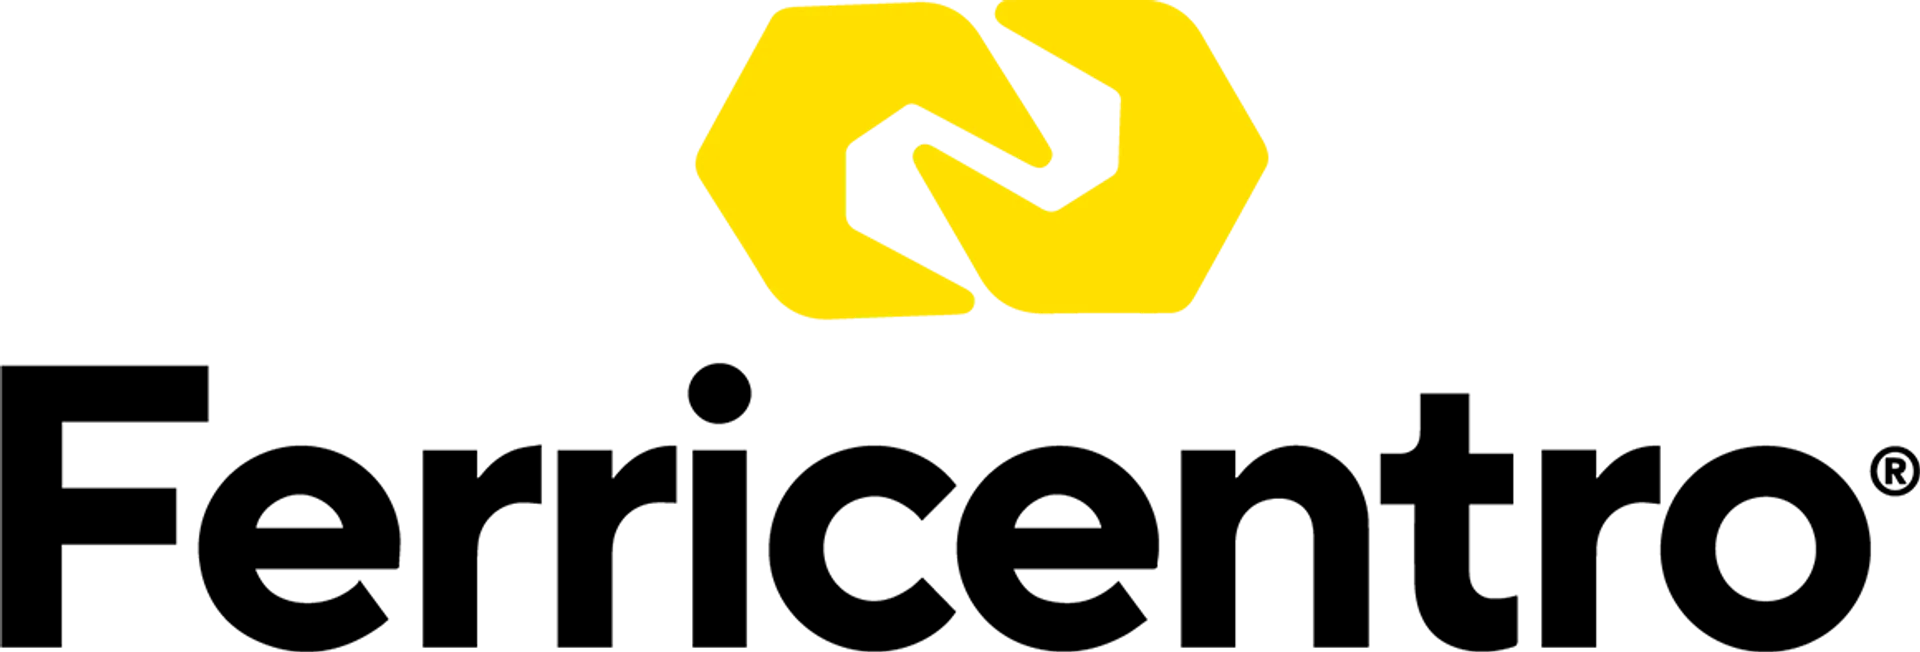 FERRICENTRO logo